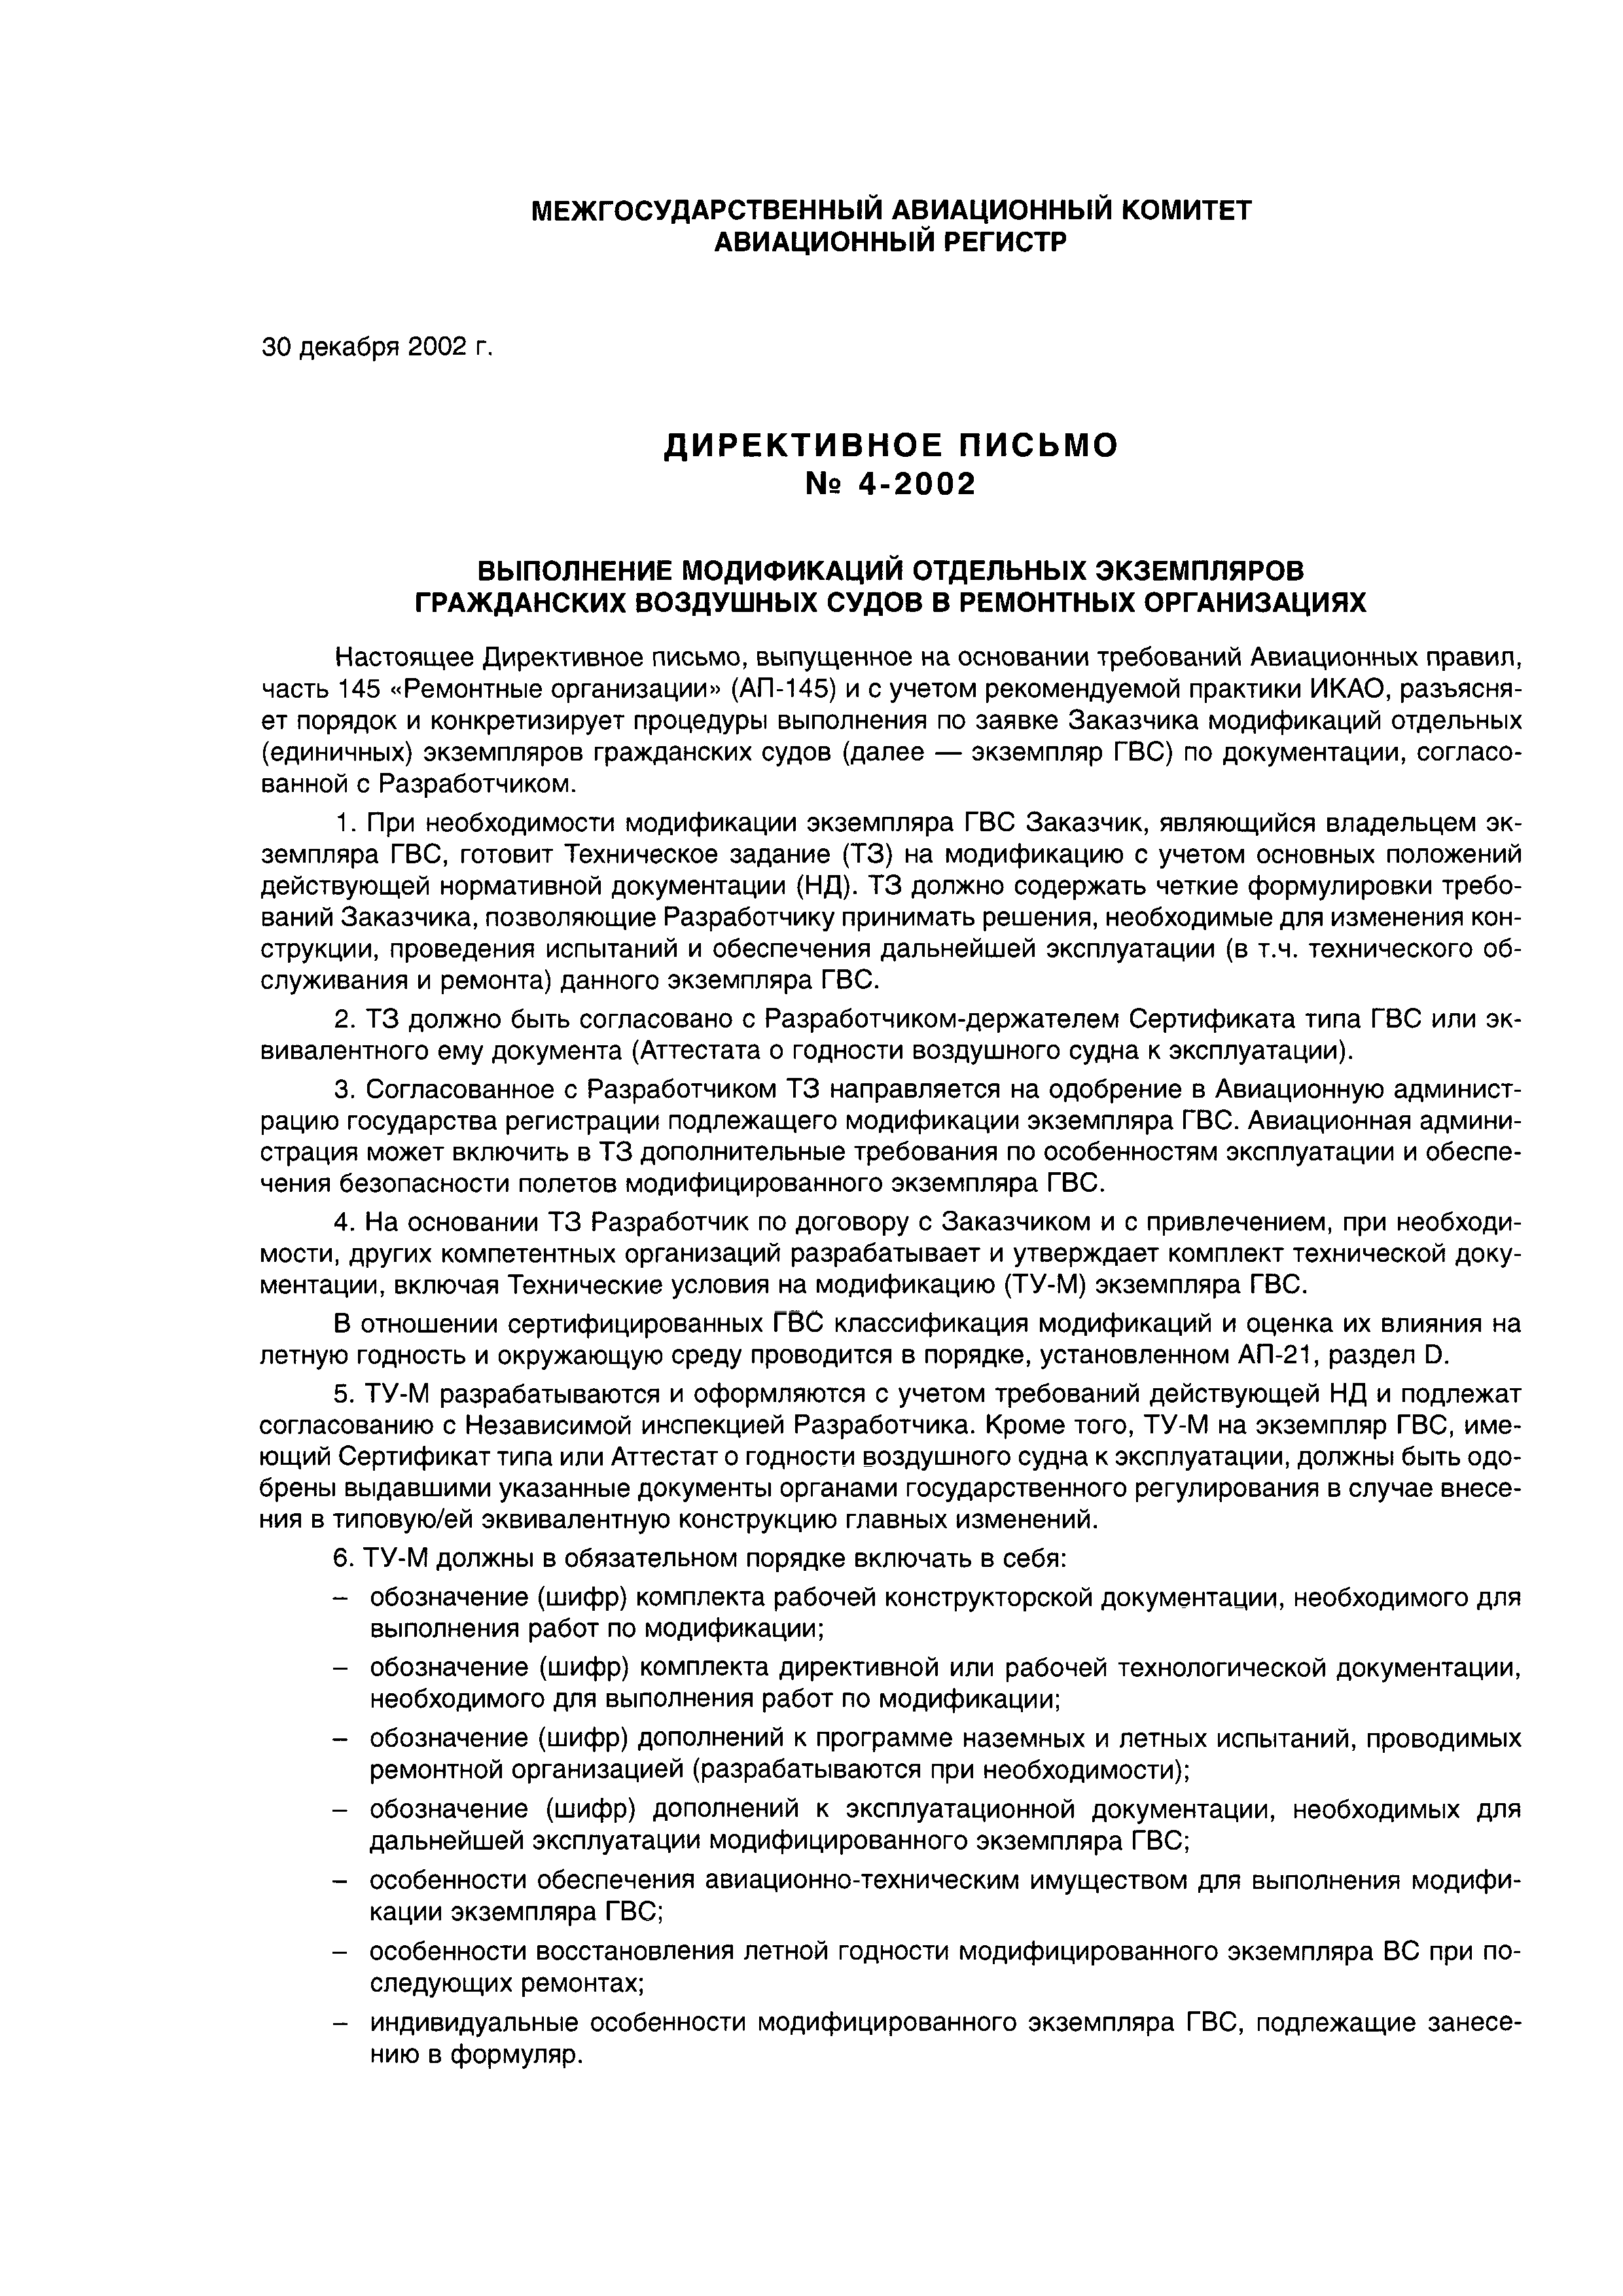 Директивное письмо 4-2002